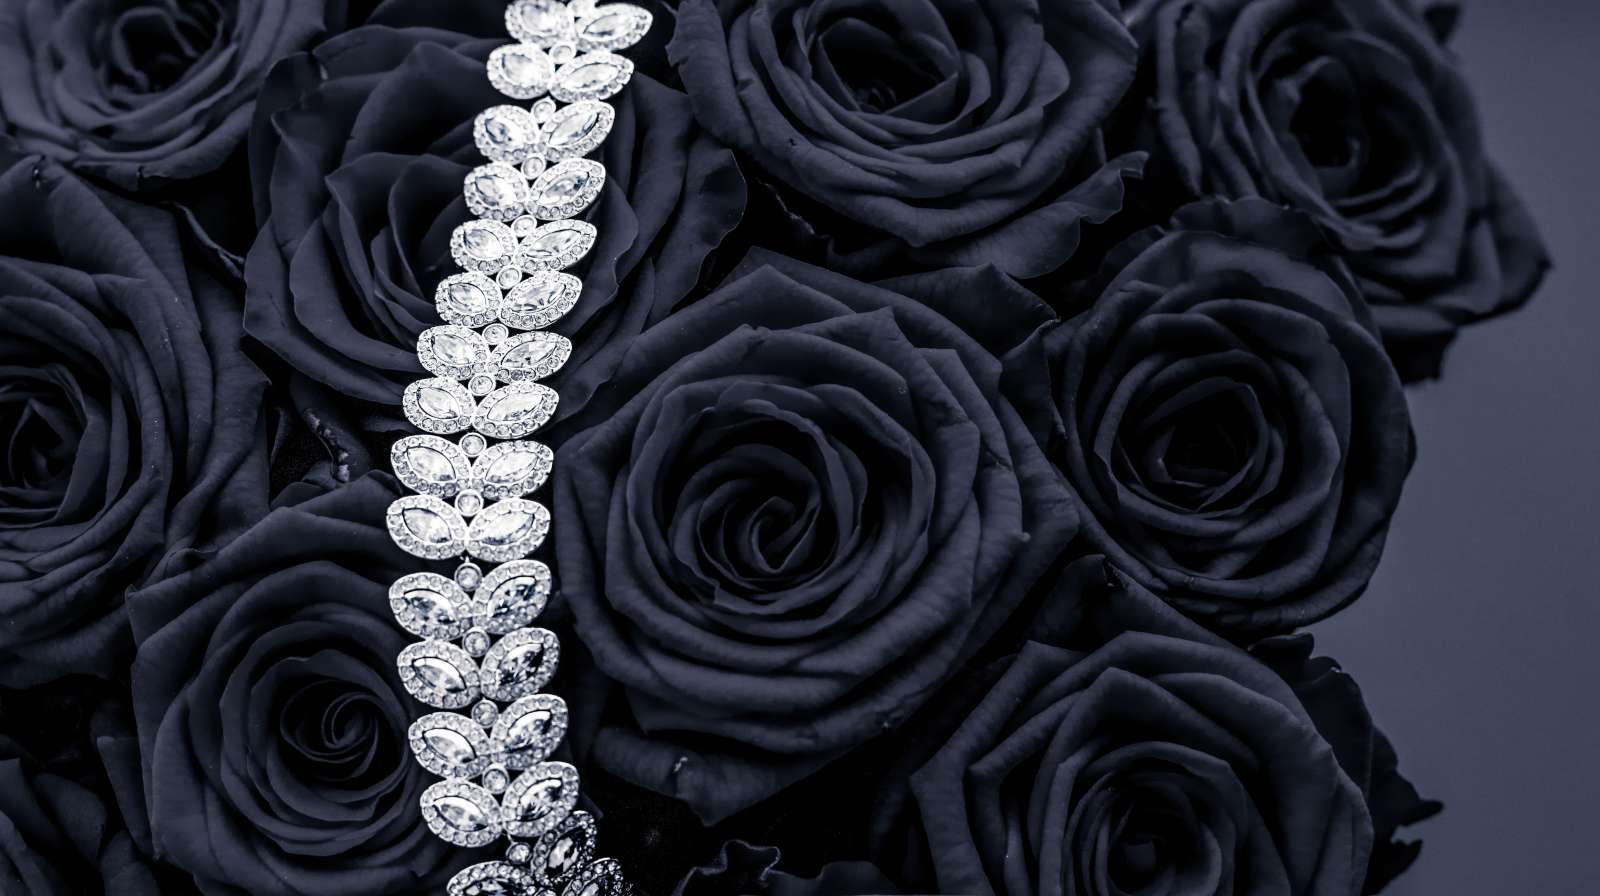 Vernietigen gebruiker delen Donkere rozen met een diamanten ketting erop fotobehang - Fotobehang.nl